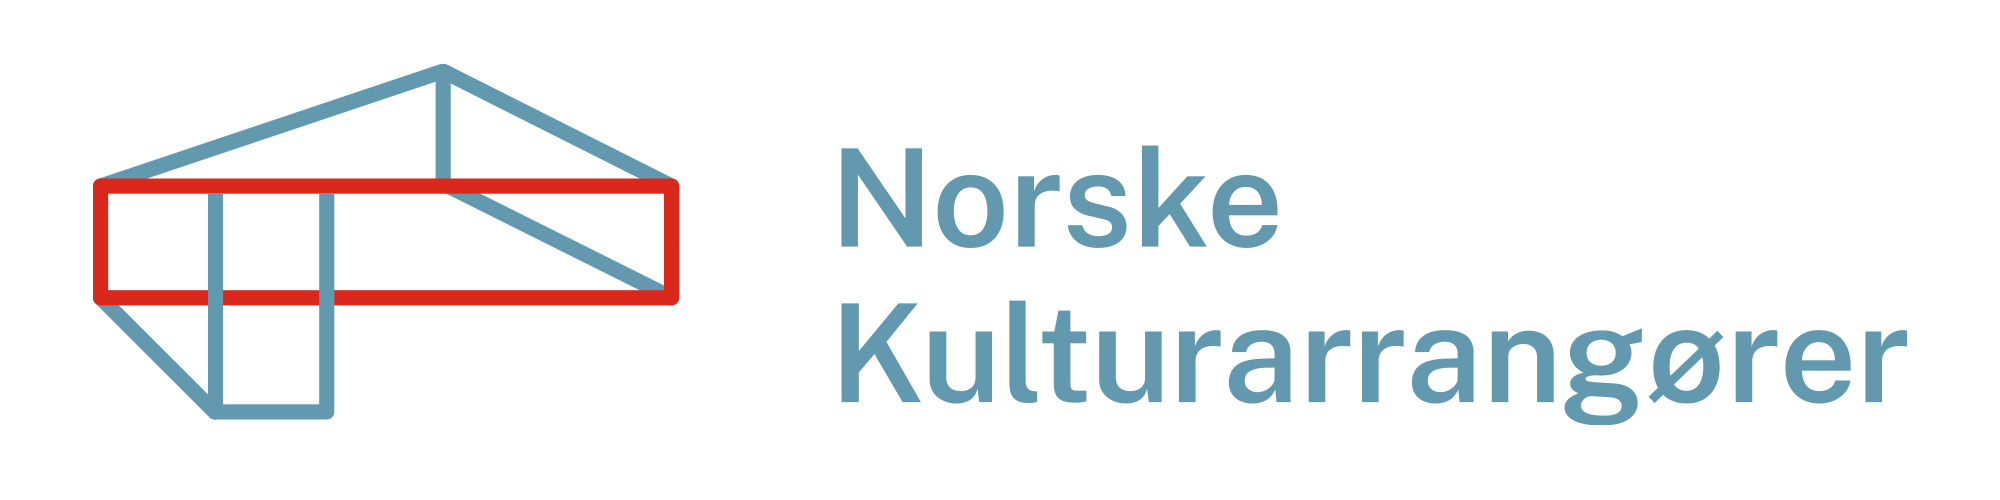 Norske Kulturarrangører (NKA) søker ny daglig leder